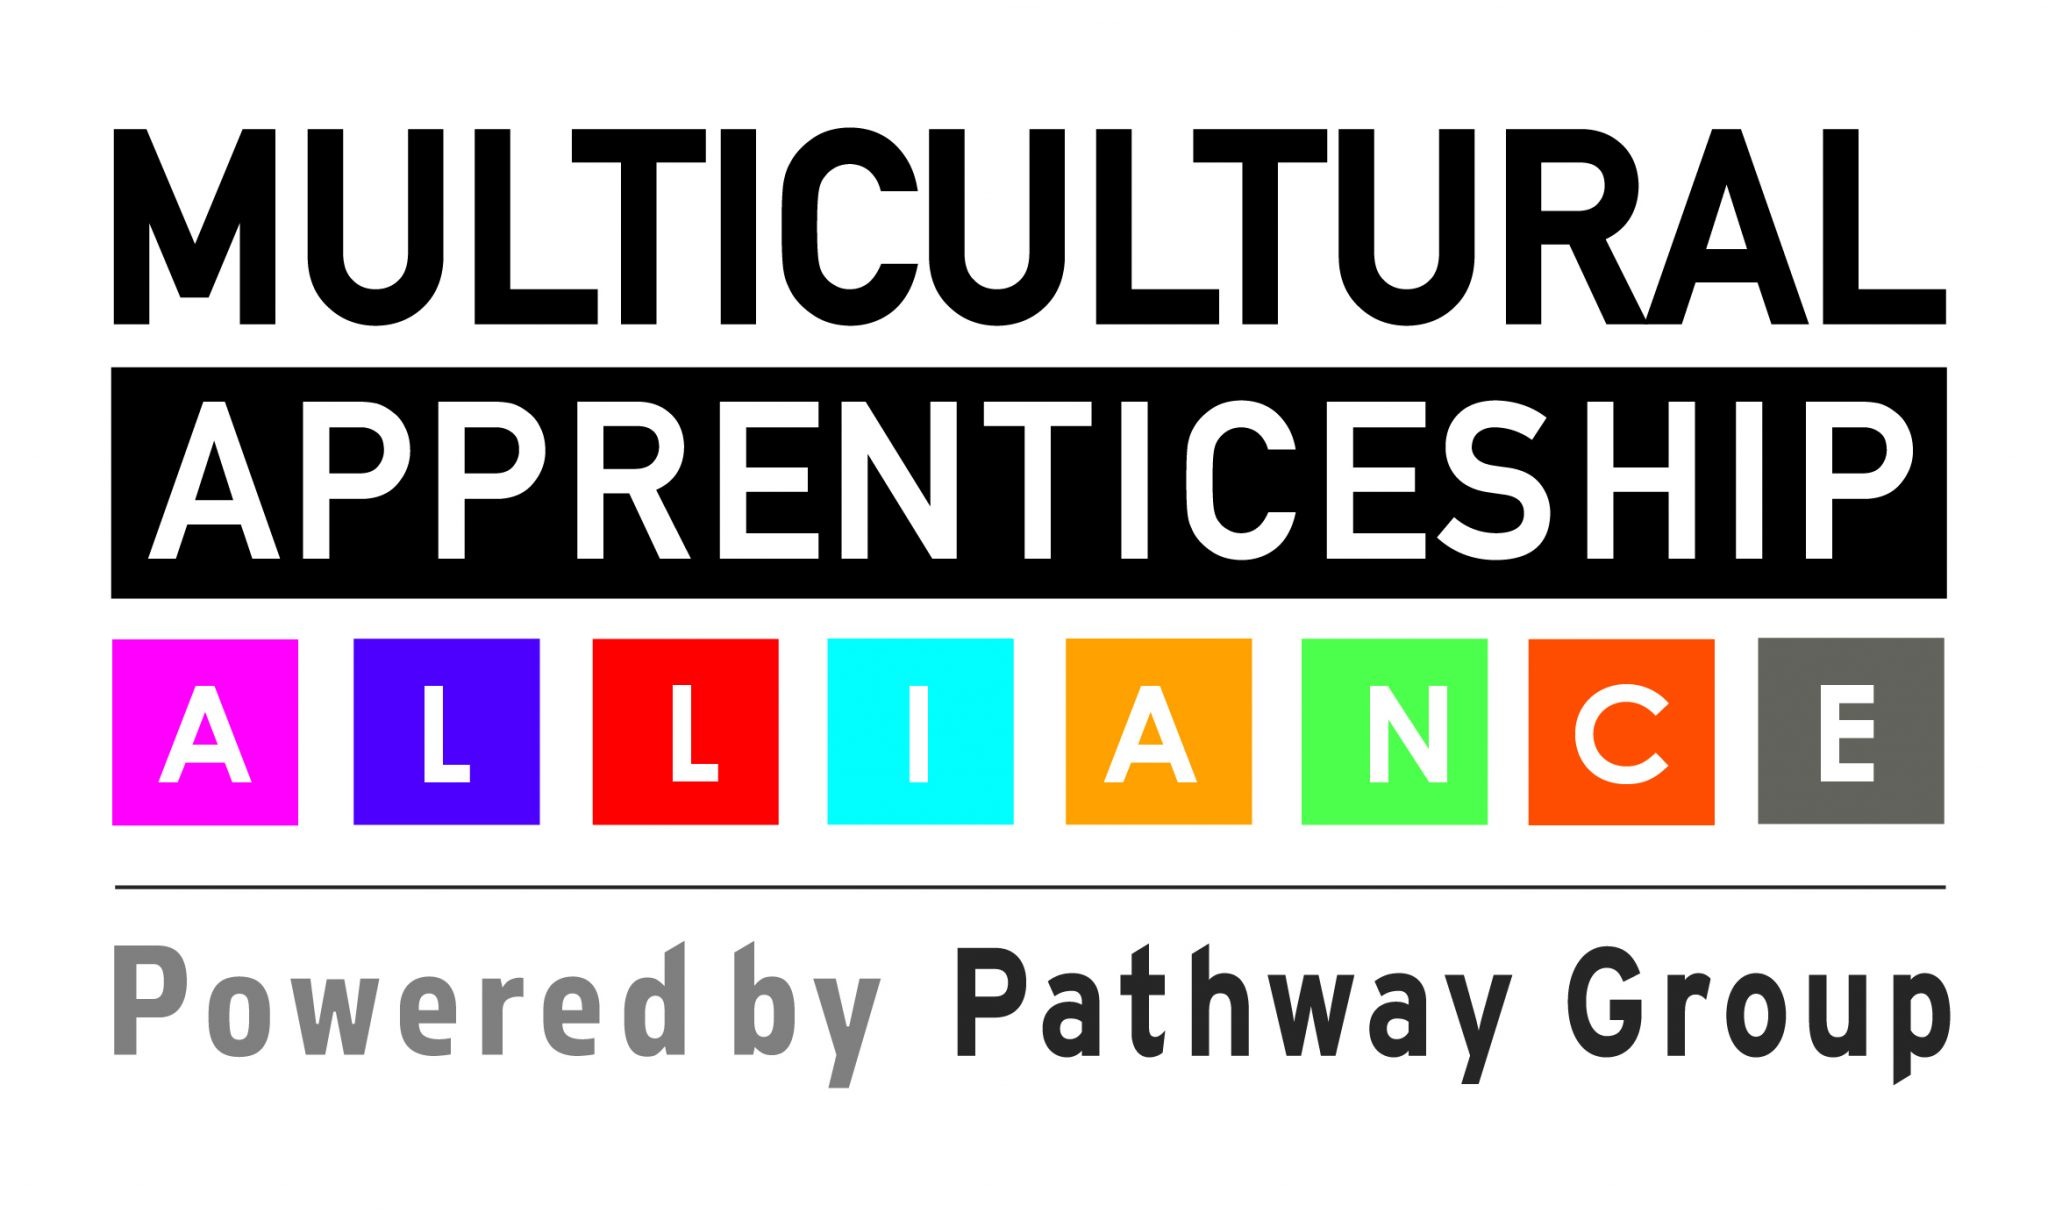 Multicultural Apprenticeship Alliance